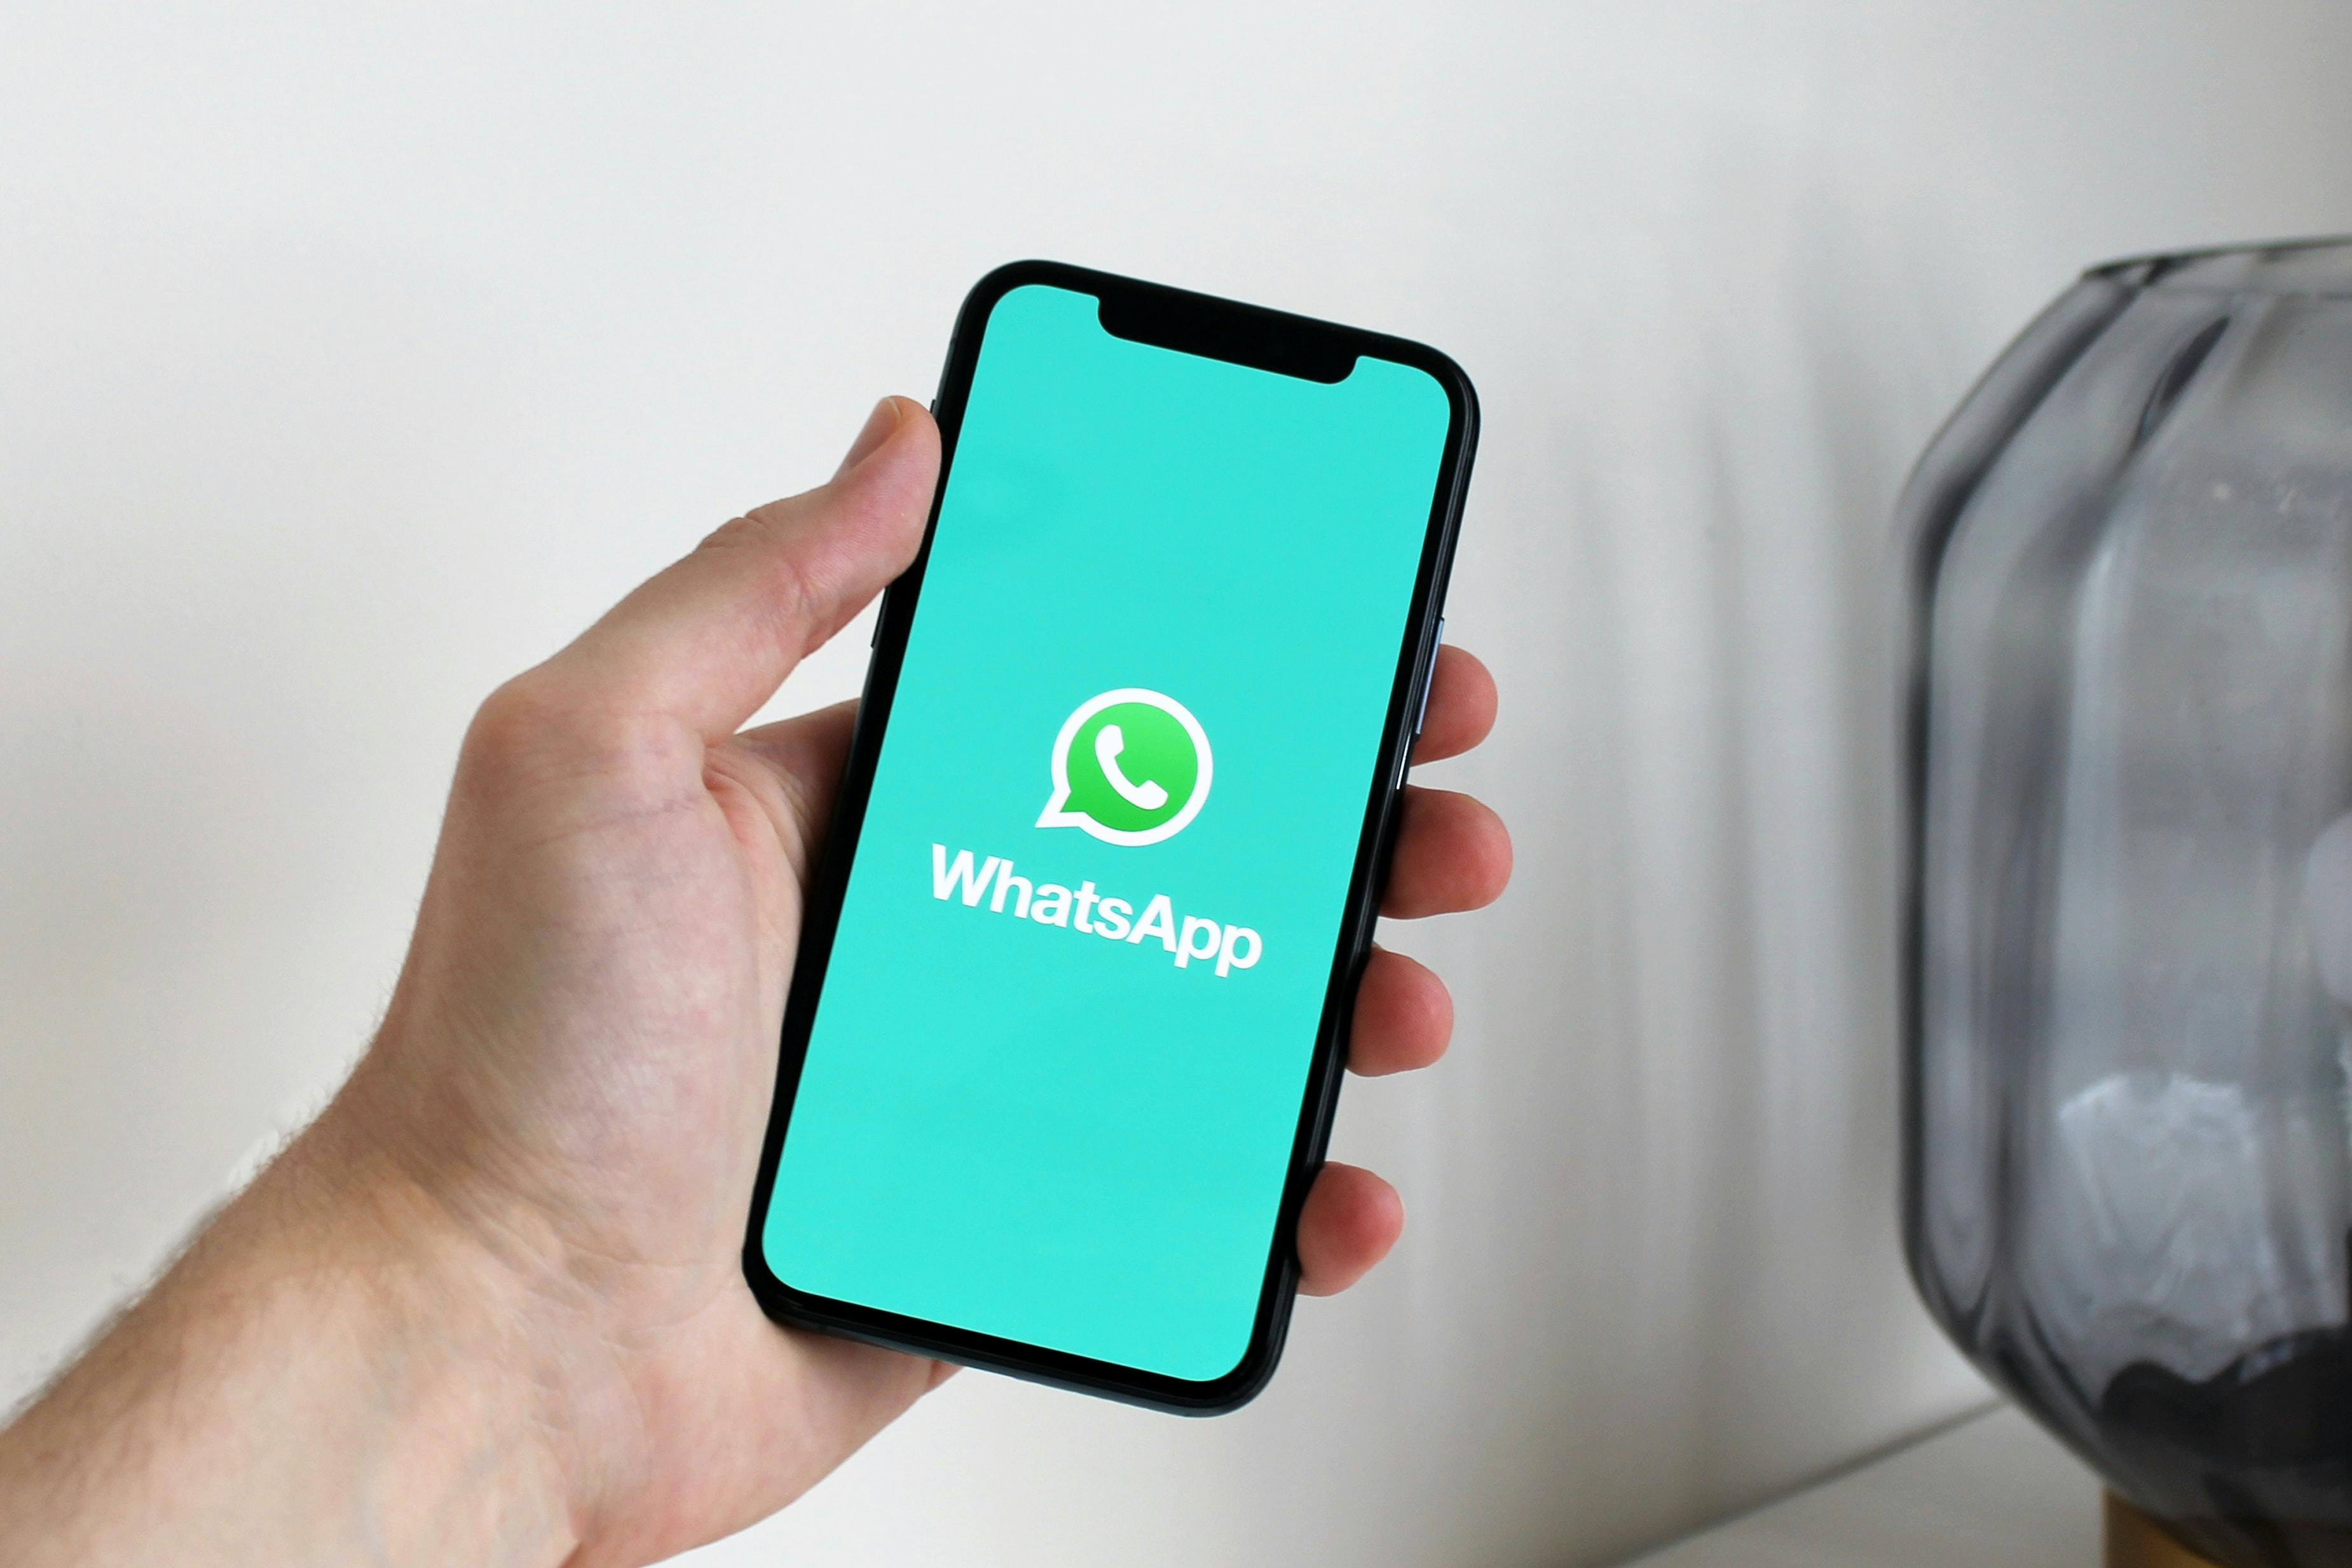 WhatsApp marketing: Como restaurantes podem usar respostas automáticas para interagir com clientes